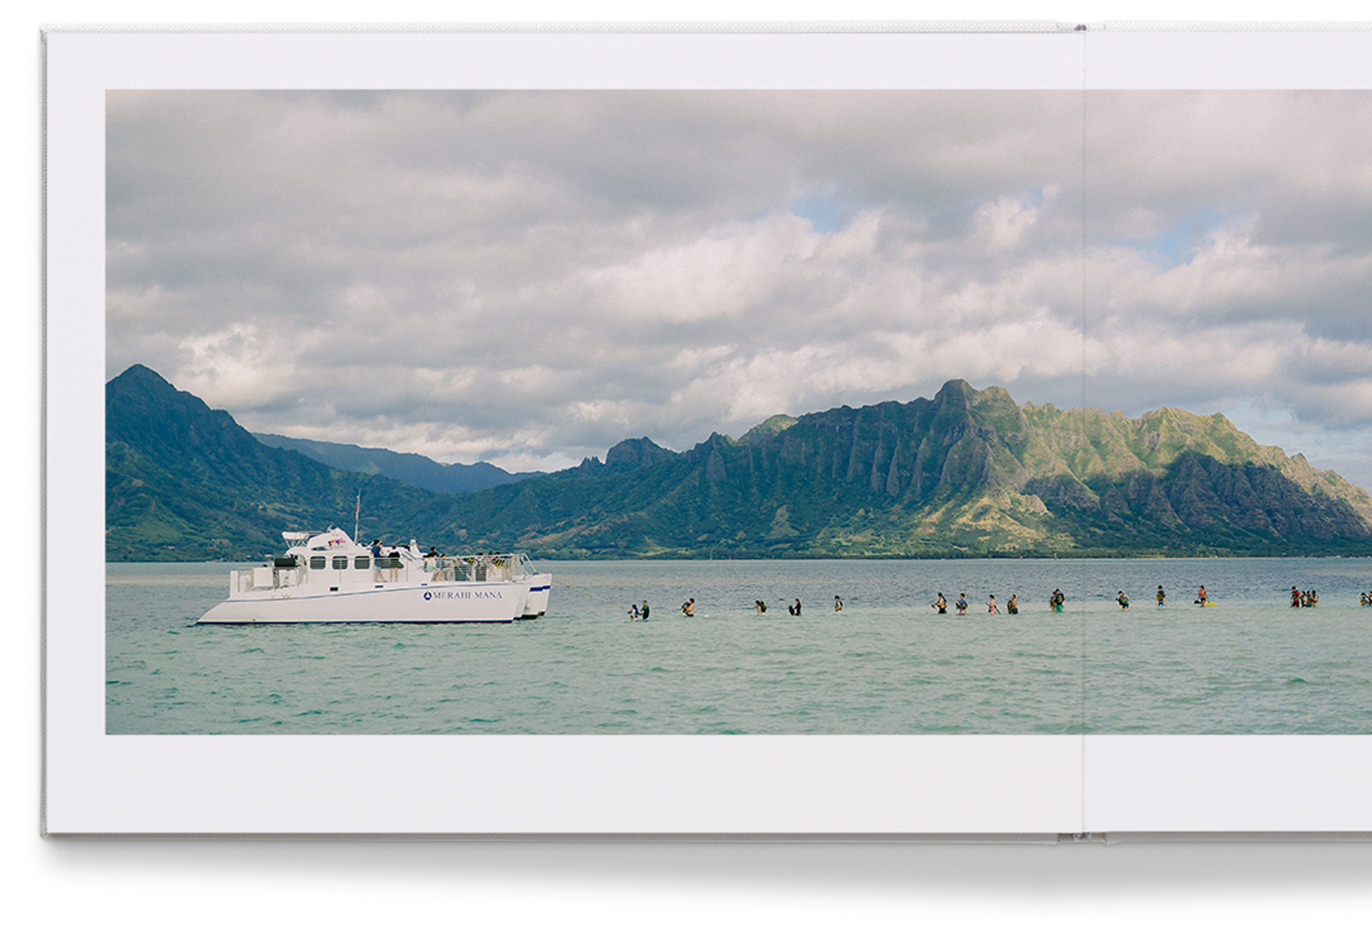 Premium-Fotoalbum aus Leder mit einem Bild von einem Boot und Menschen im Meer und Berglandschaft im Hintergrund.